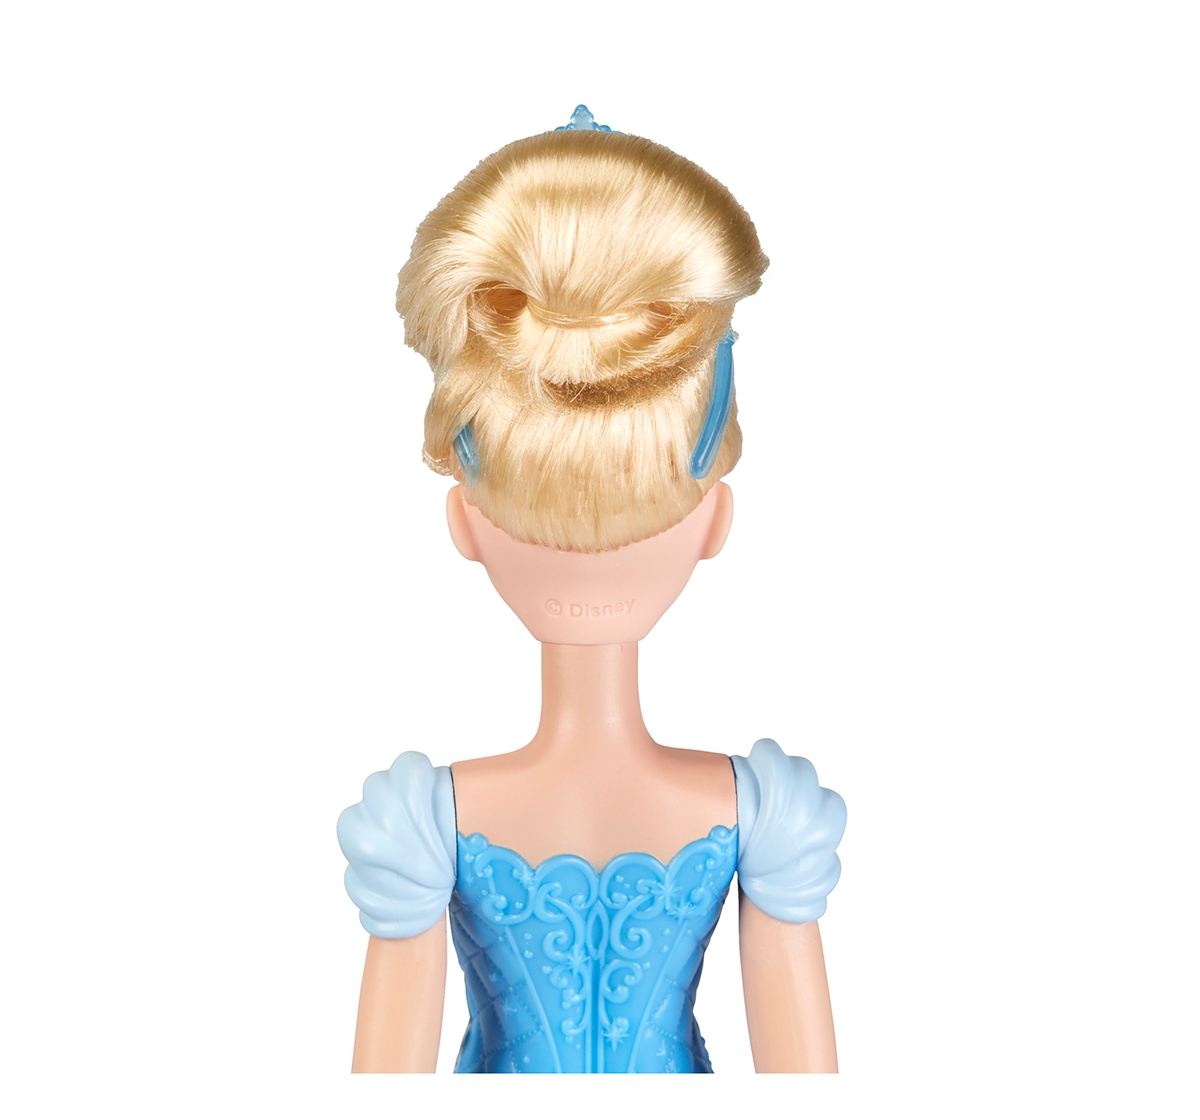 DISNEY | Disney Princess Royal Shimmer Cinderella Dolls & Accessories for Girls age 3Y+ 1